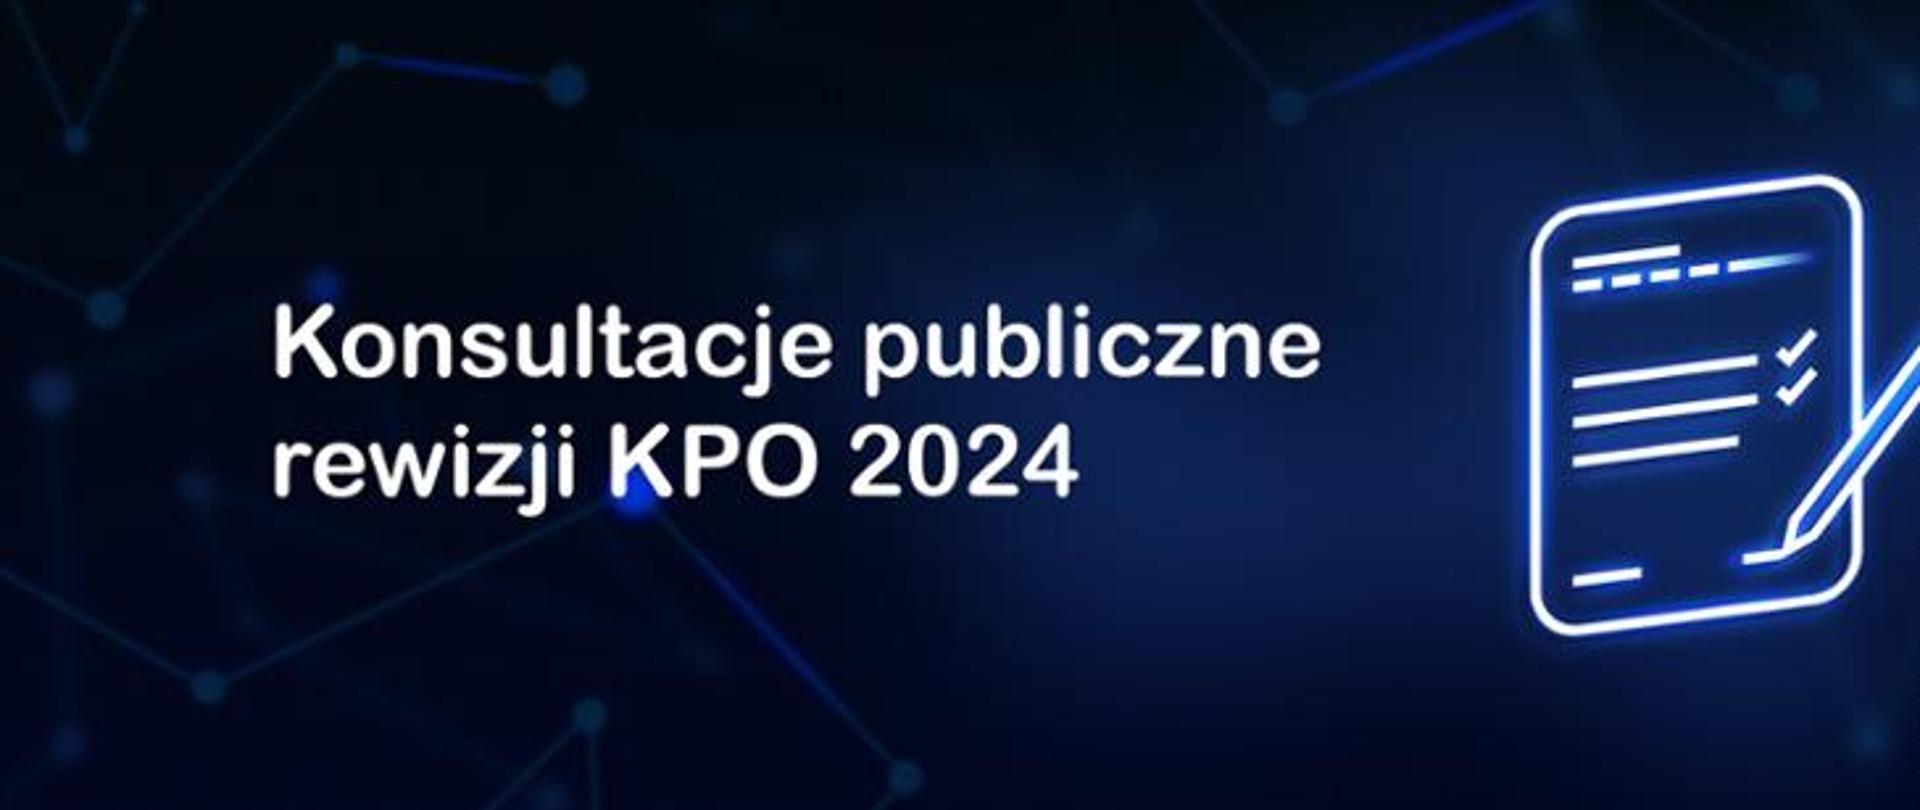 Konsultacje publiczne rewizji KPO 2024